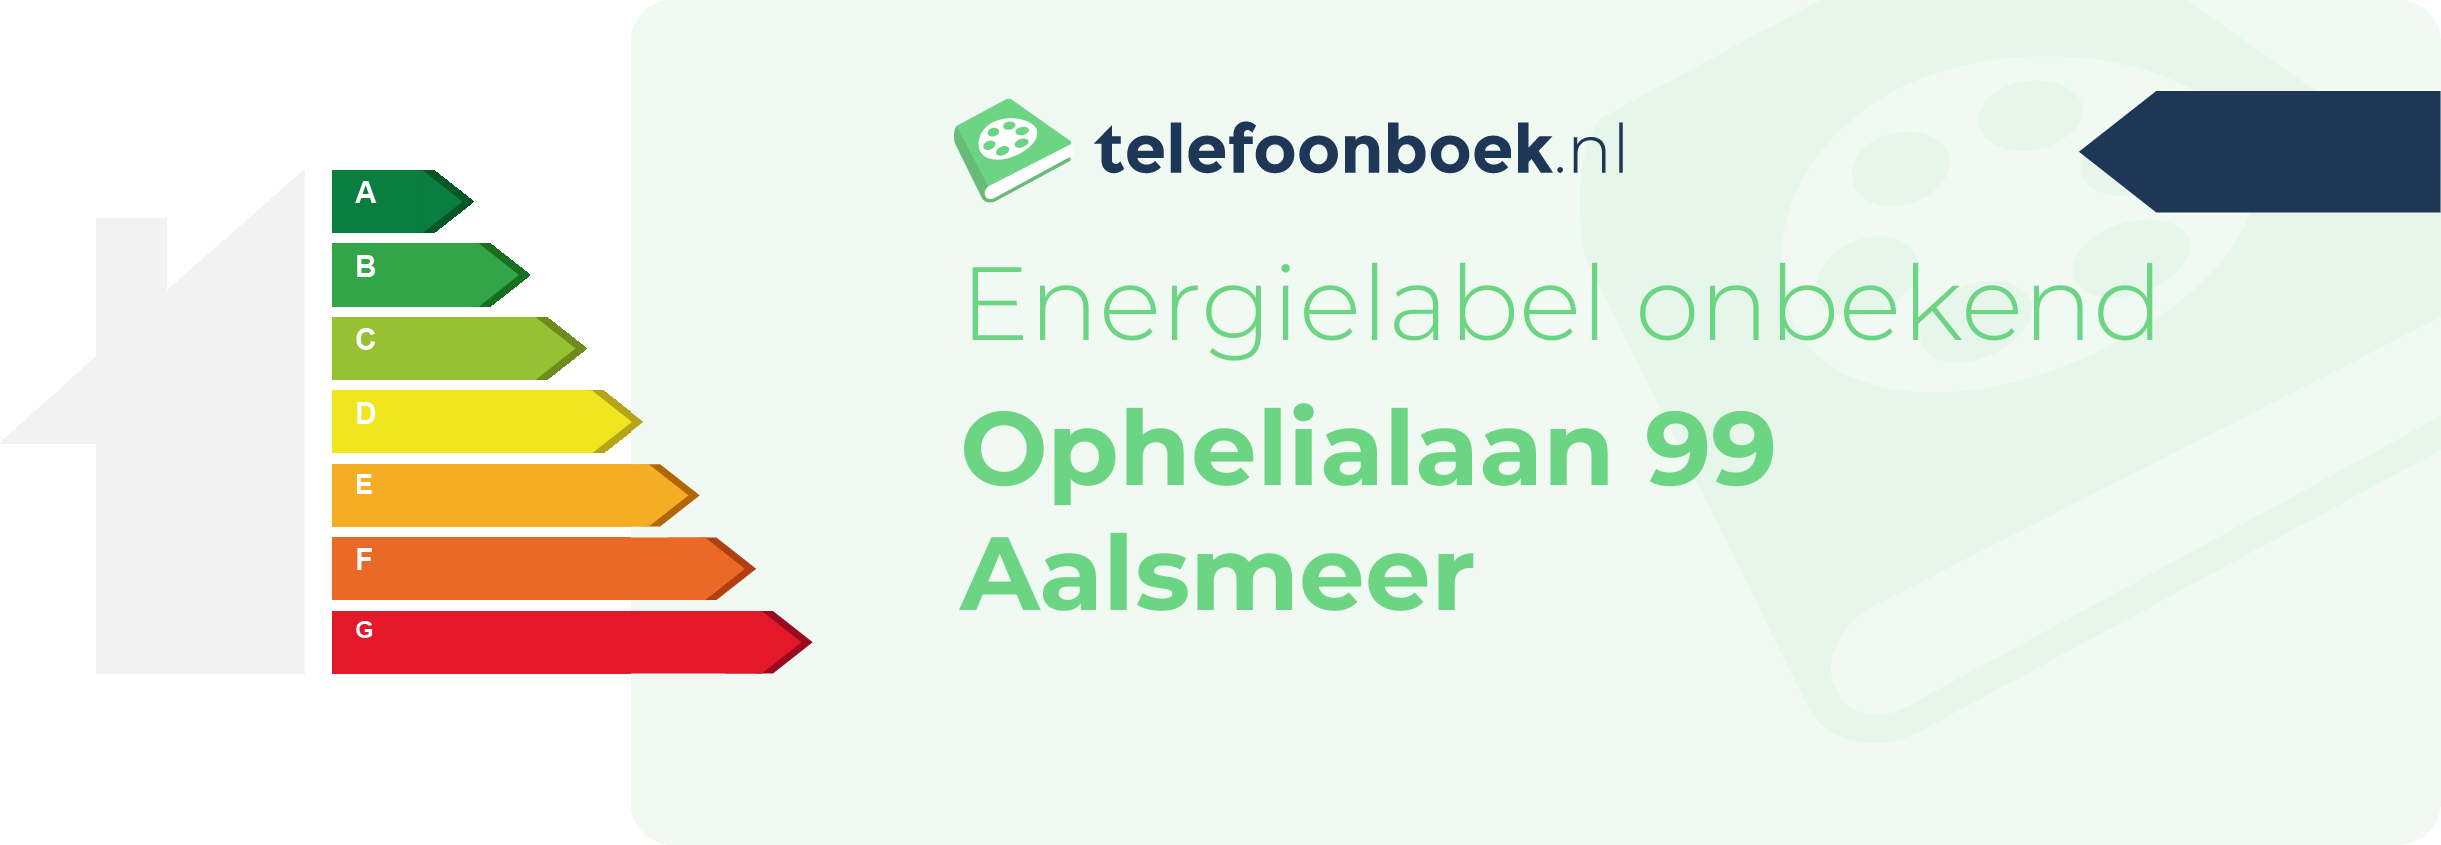 Energielabel Ophelialaan 99 Aalsmeer